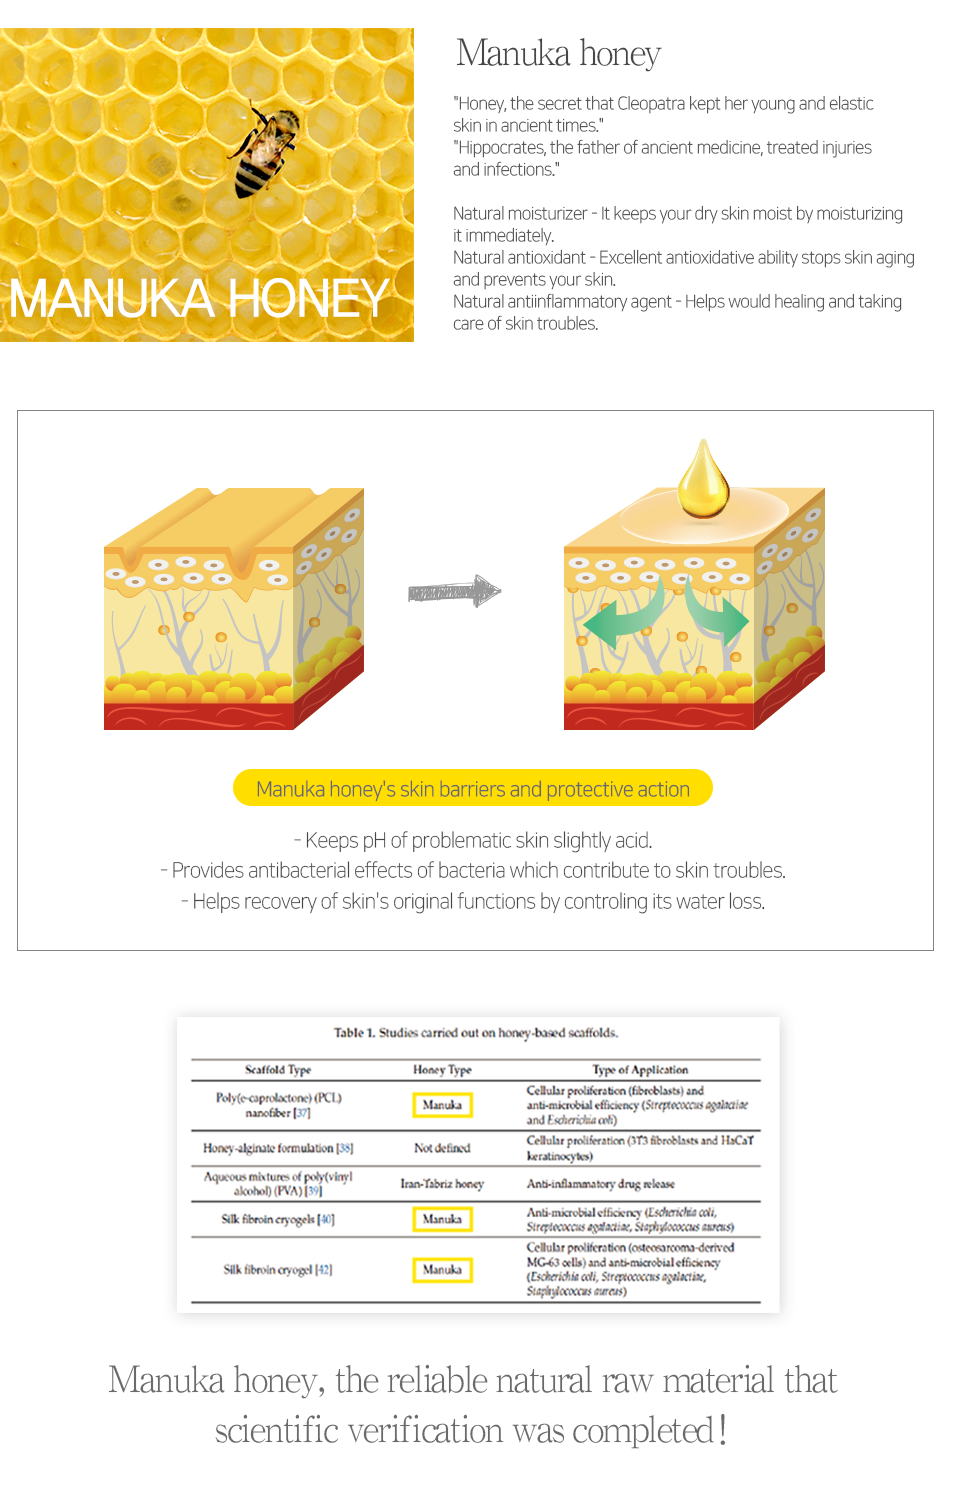 Manuka Honey Serum